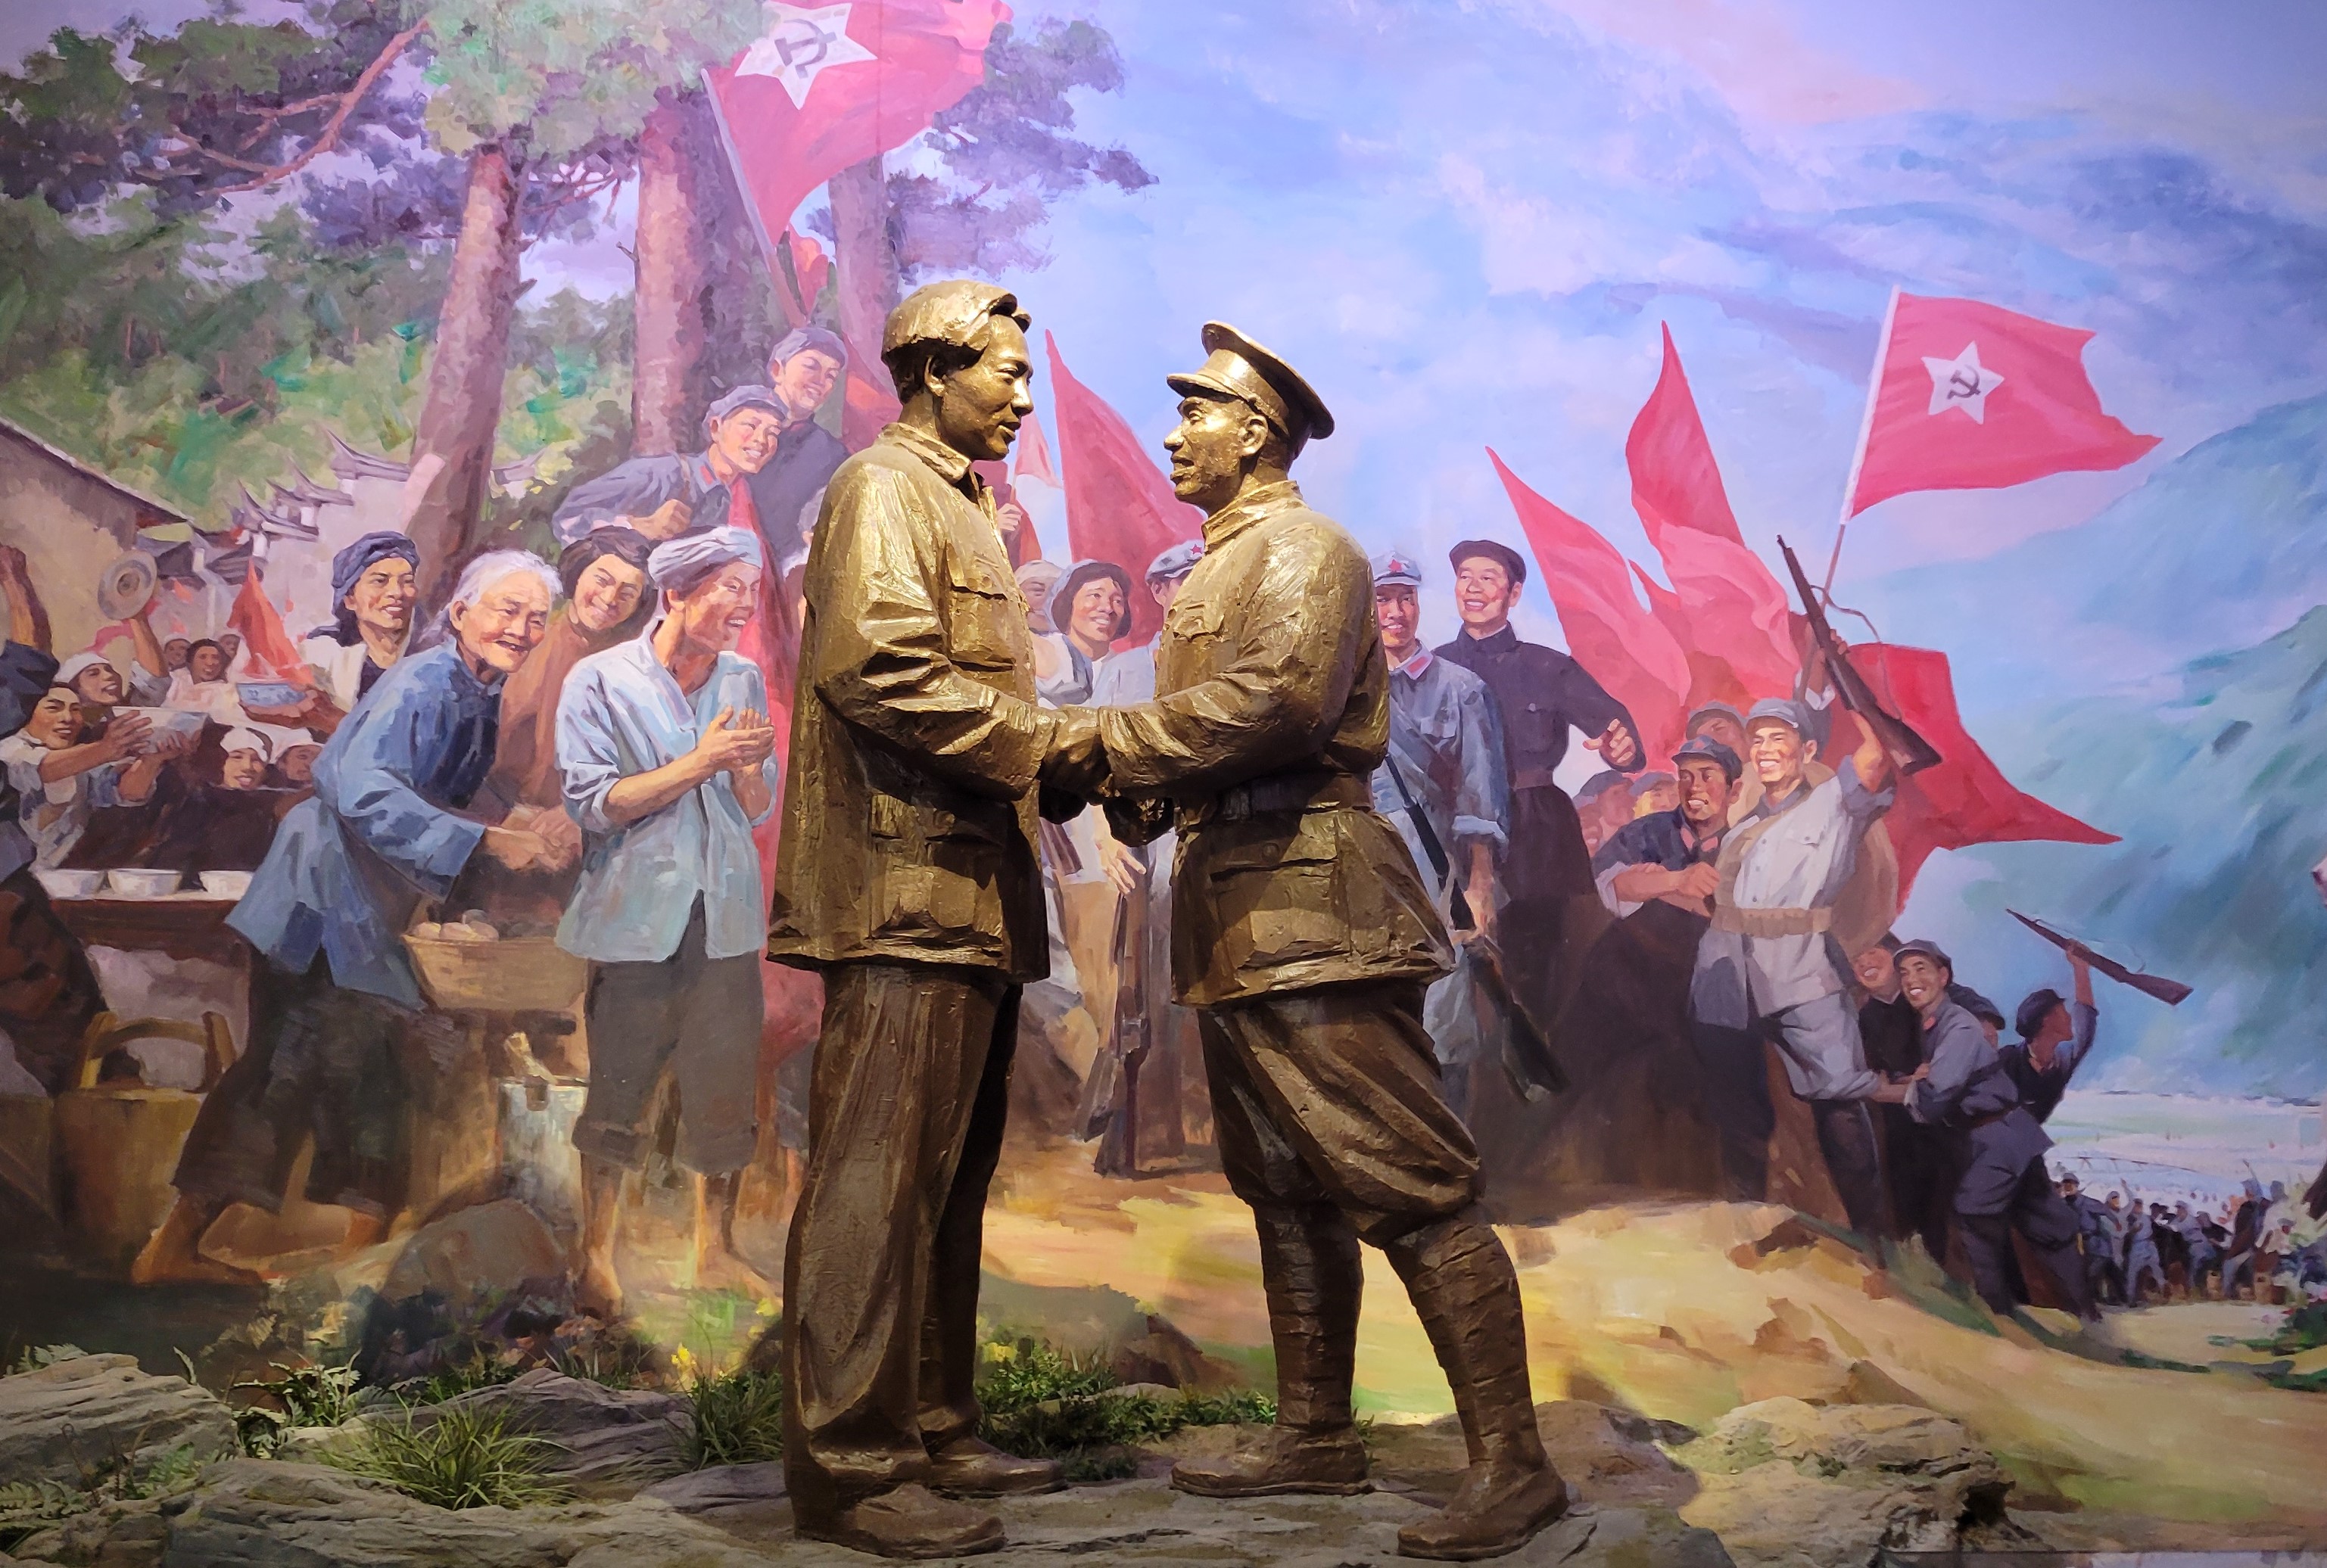 마오쩌둥(왼쪽)과 주더의 ‘징강산의 회합’ 장면. 중국 공산당 역사의 주요 장면을 곳곳에 대형 그림으로 재현했다. (조성원 기자)